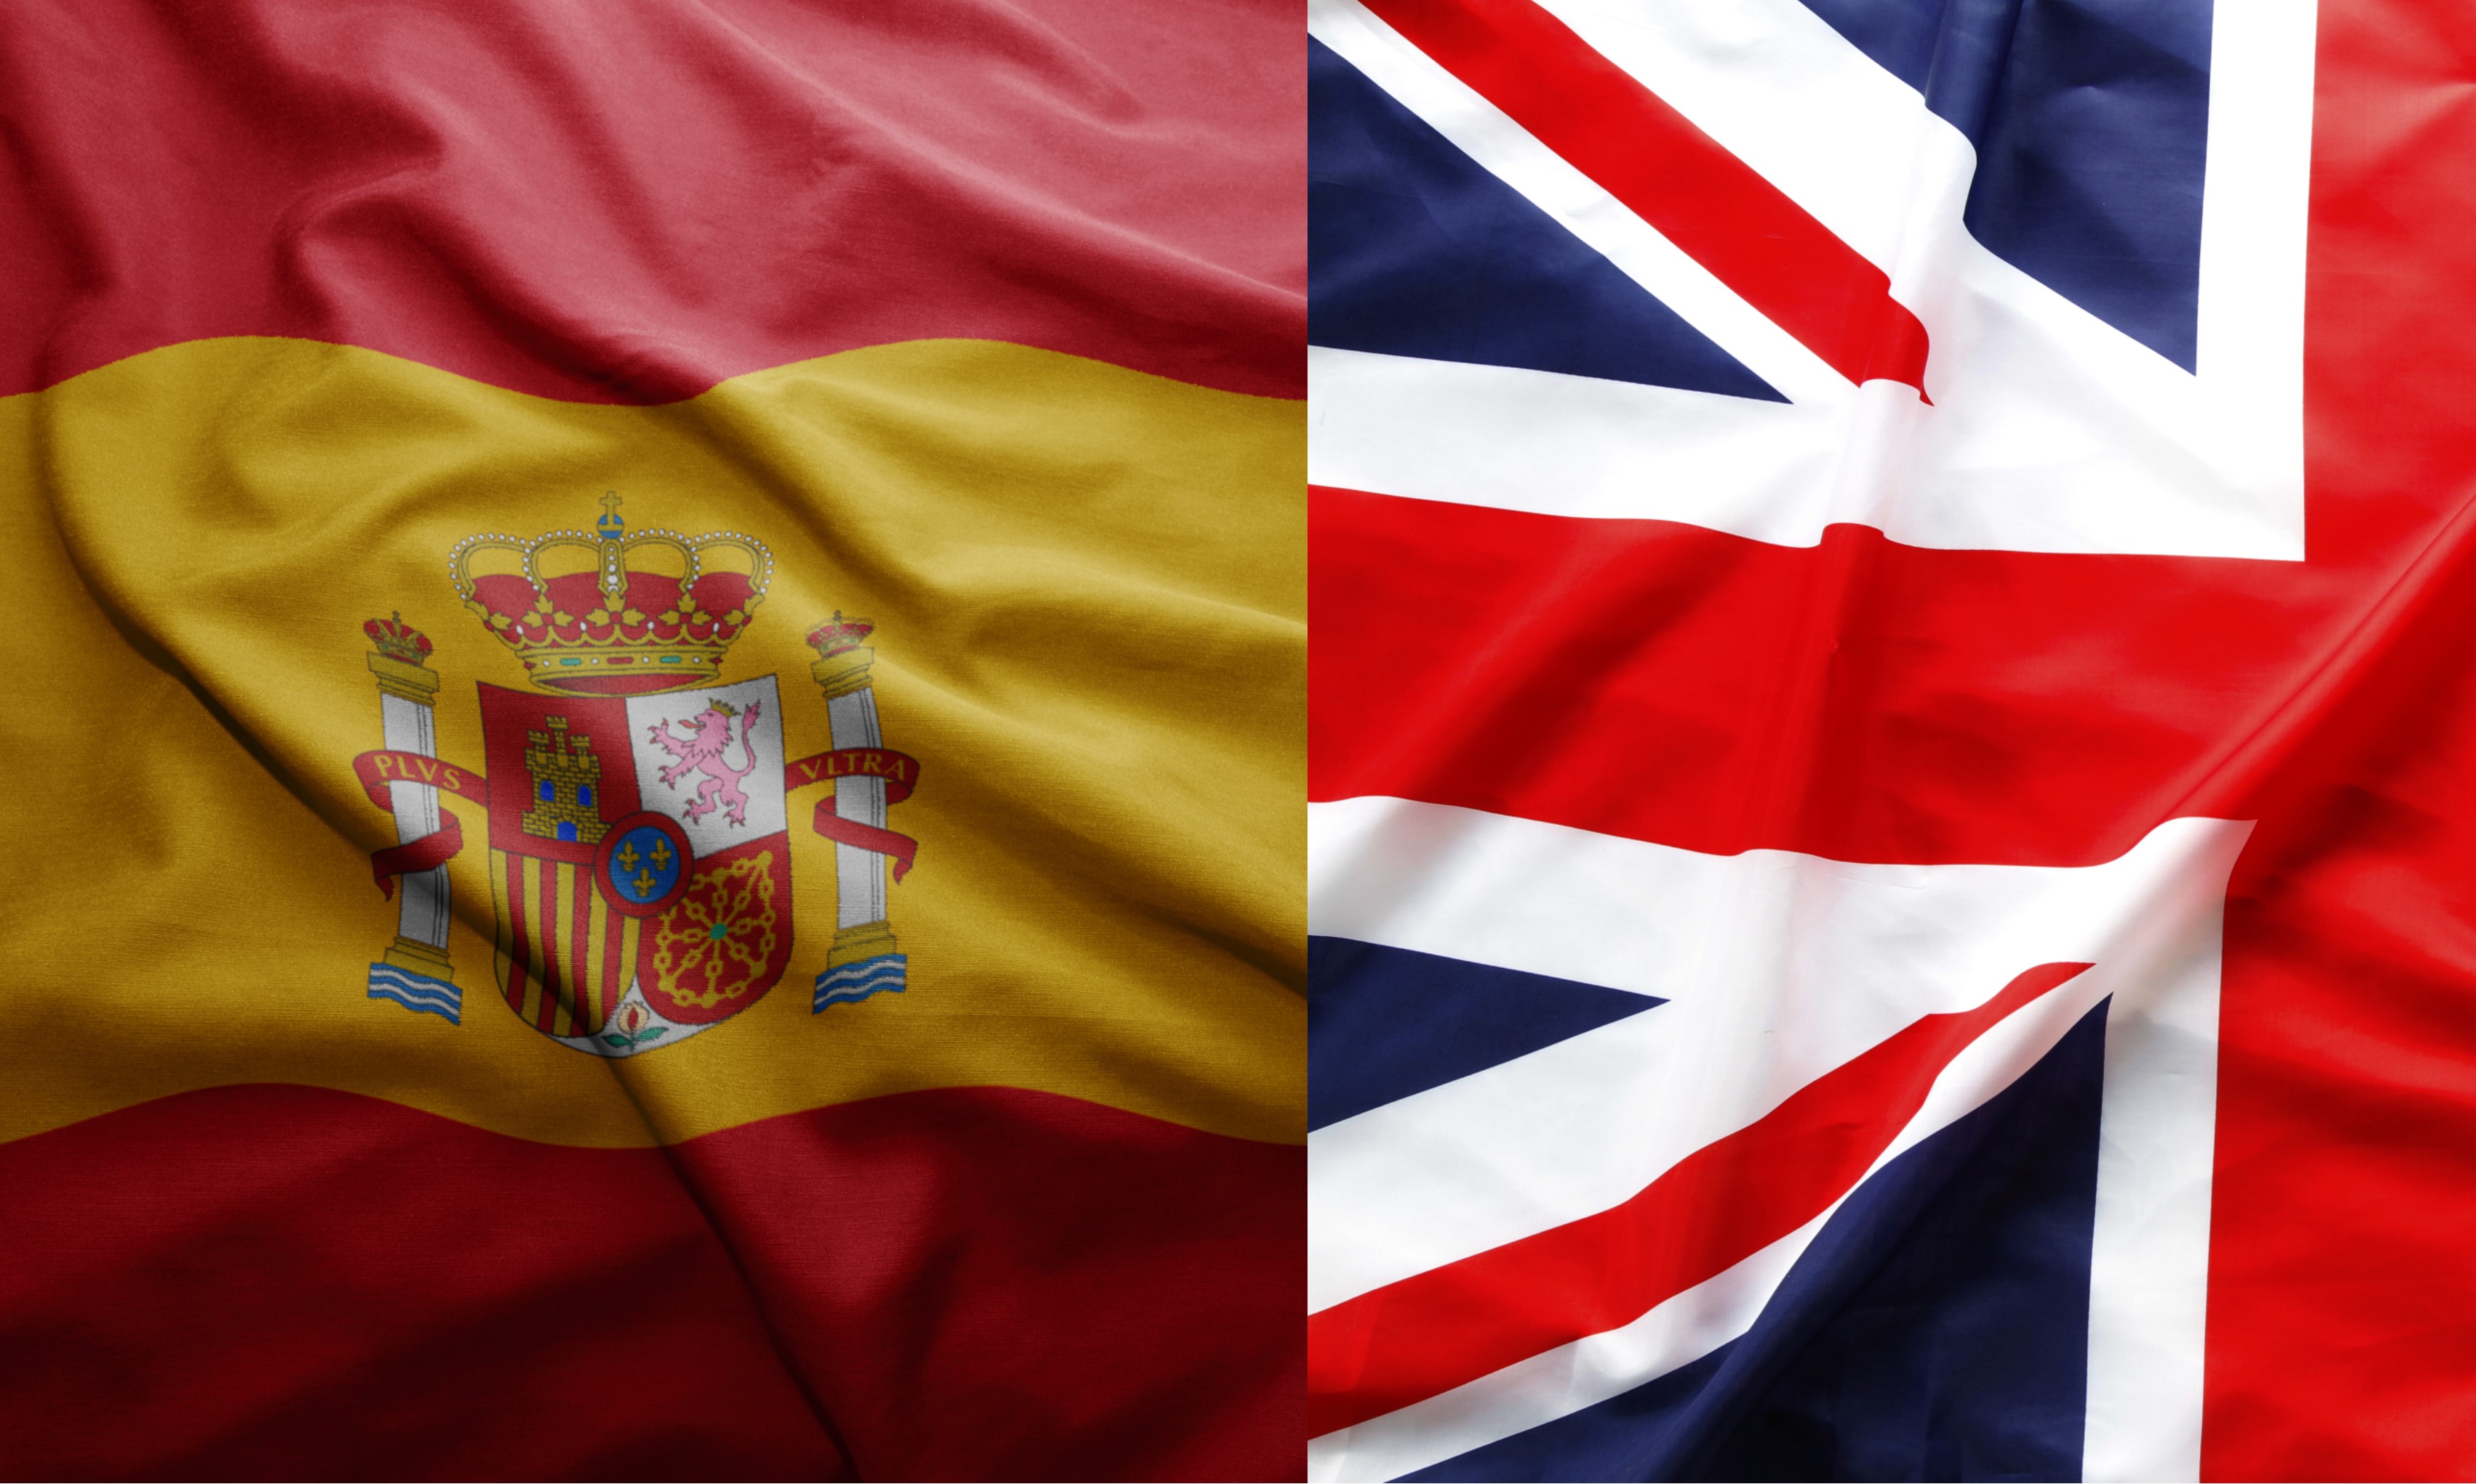 Spanish flag and Union jack